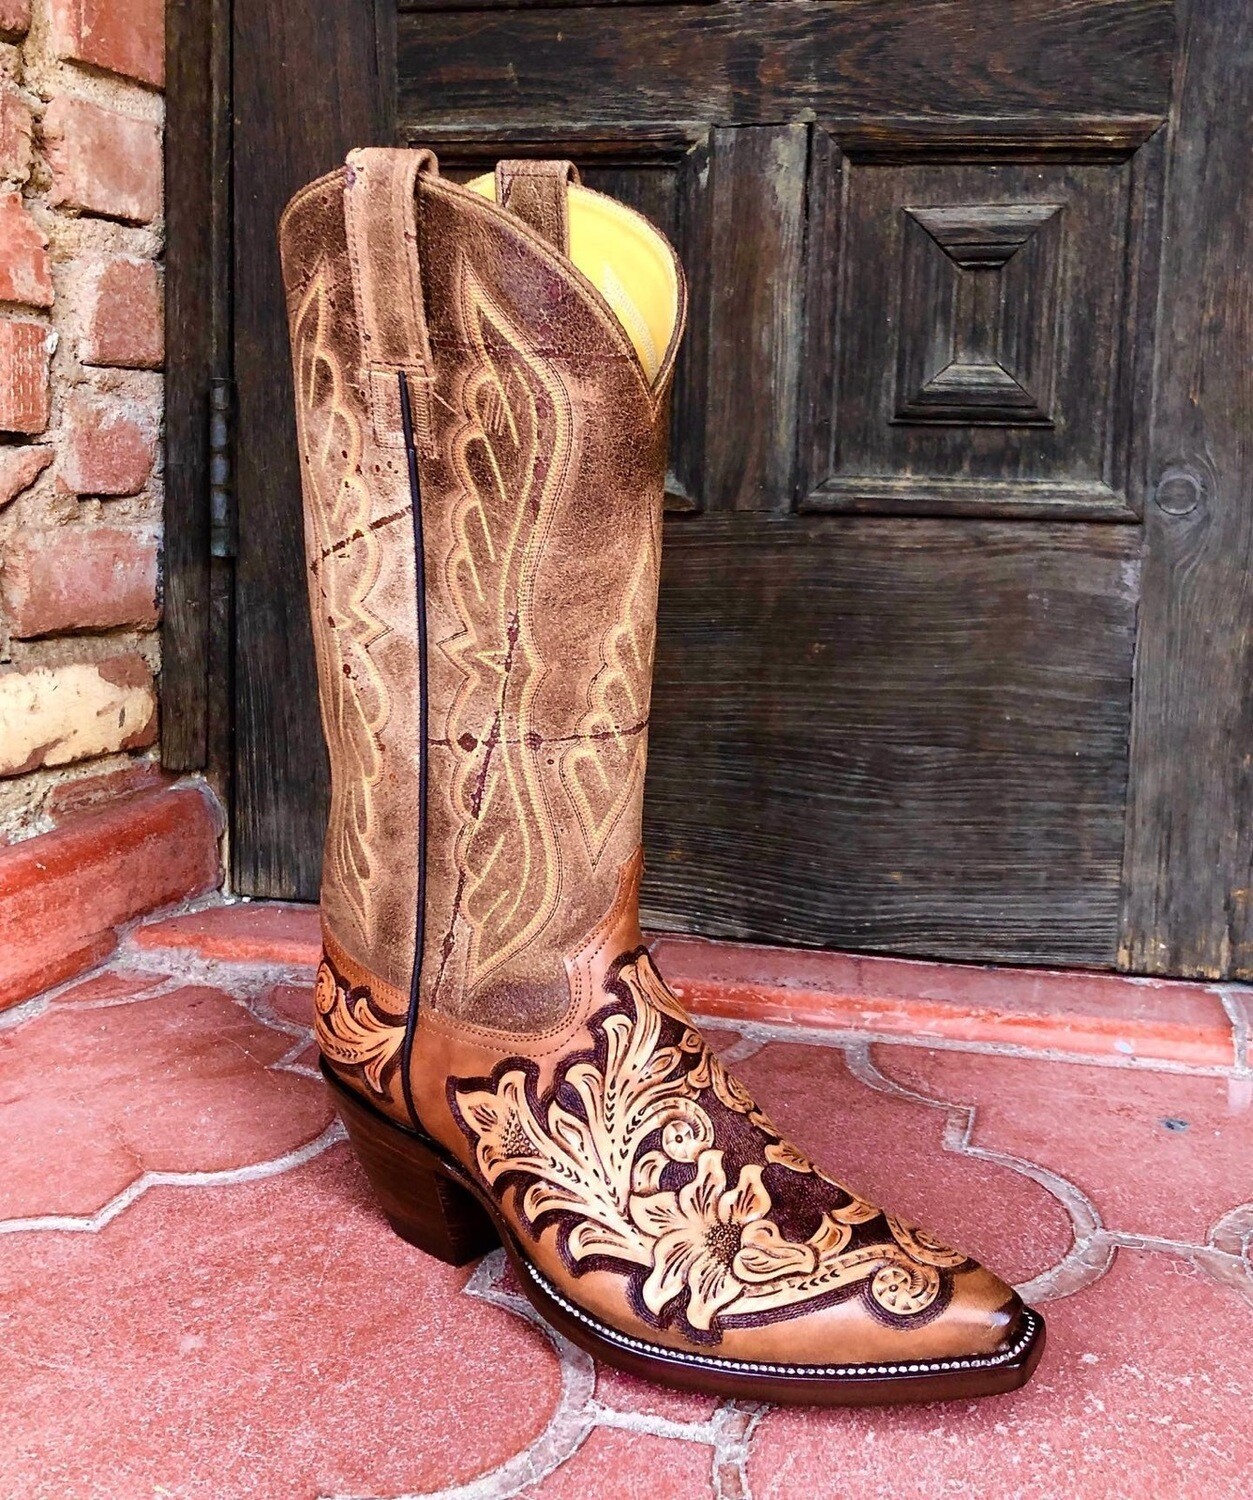 Umma Gumma Hand-Tooled Cowboy Boots